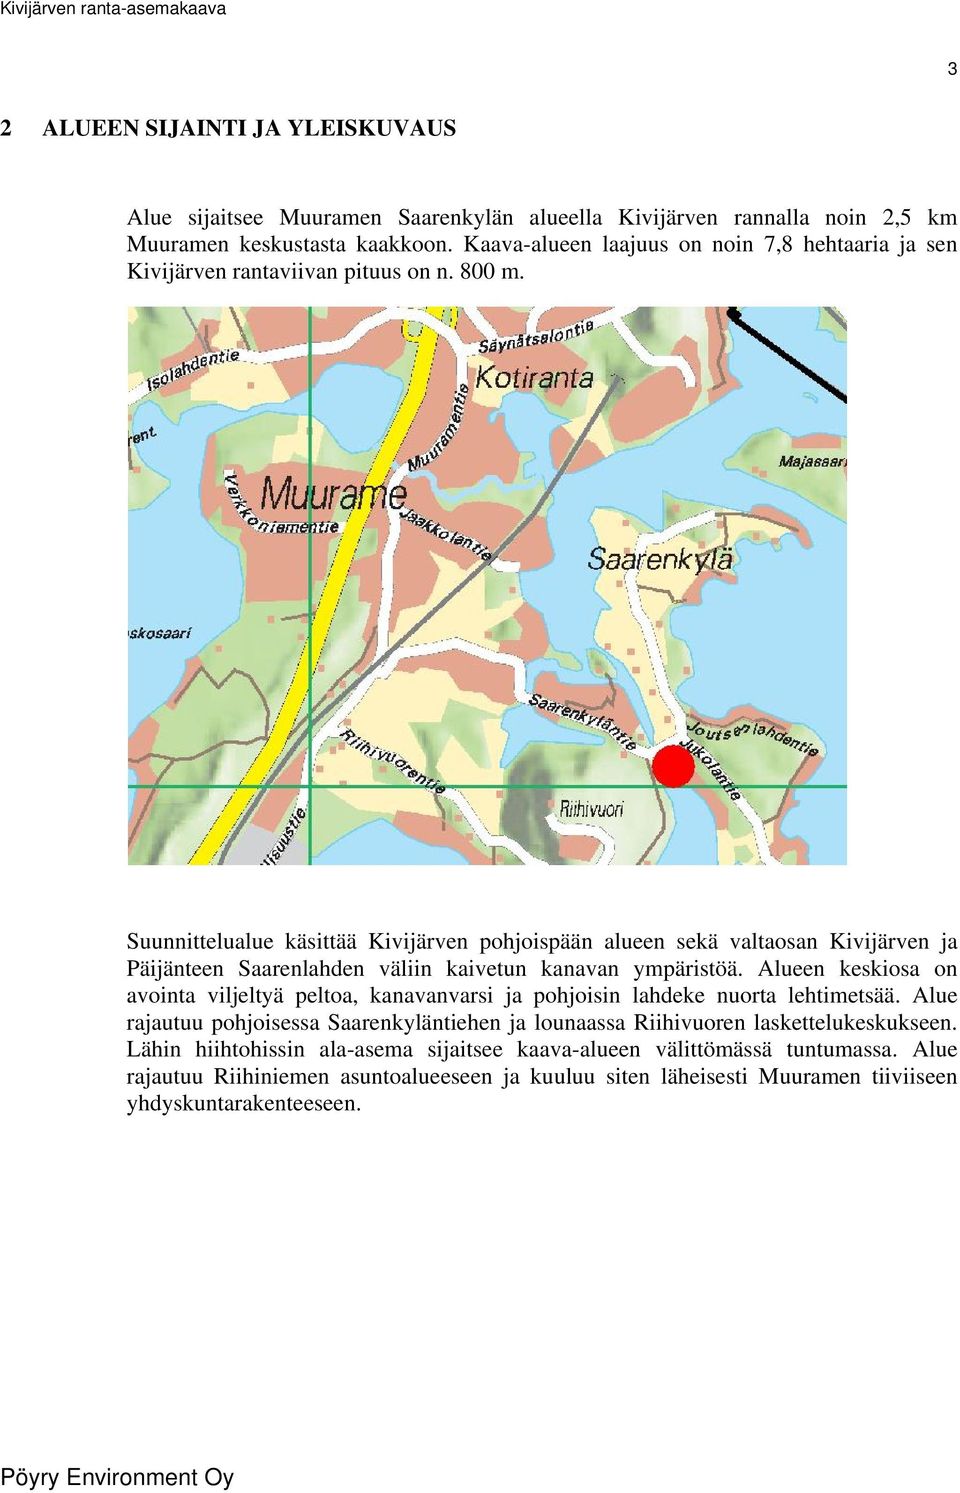 Suunnittelualue käsittää Kivijärven pohjoispään alueen sekä valtaosan Kivijärven ja Päijänteen Saarenlahden väliin kaivetun kanavan ympäristöä.